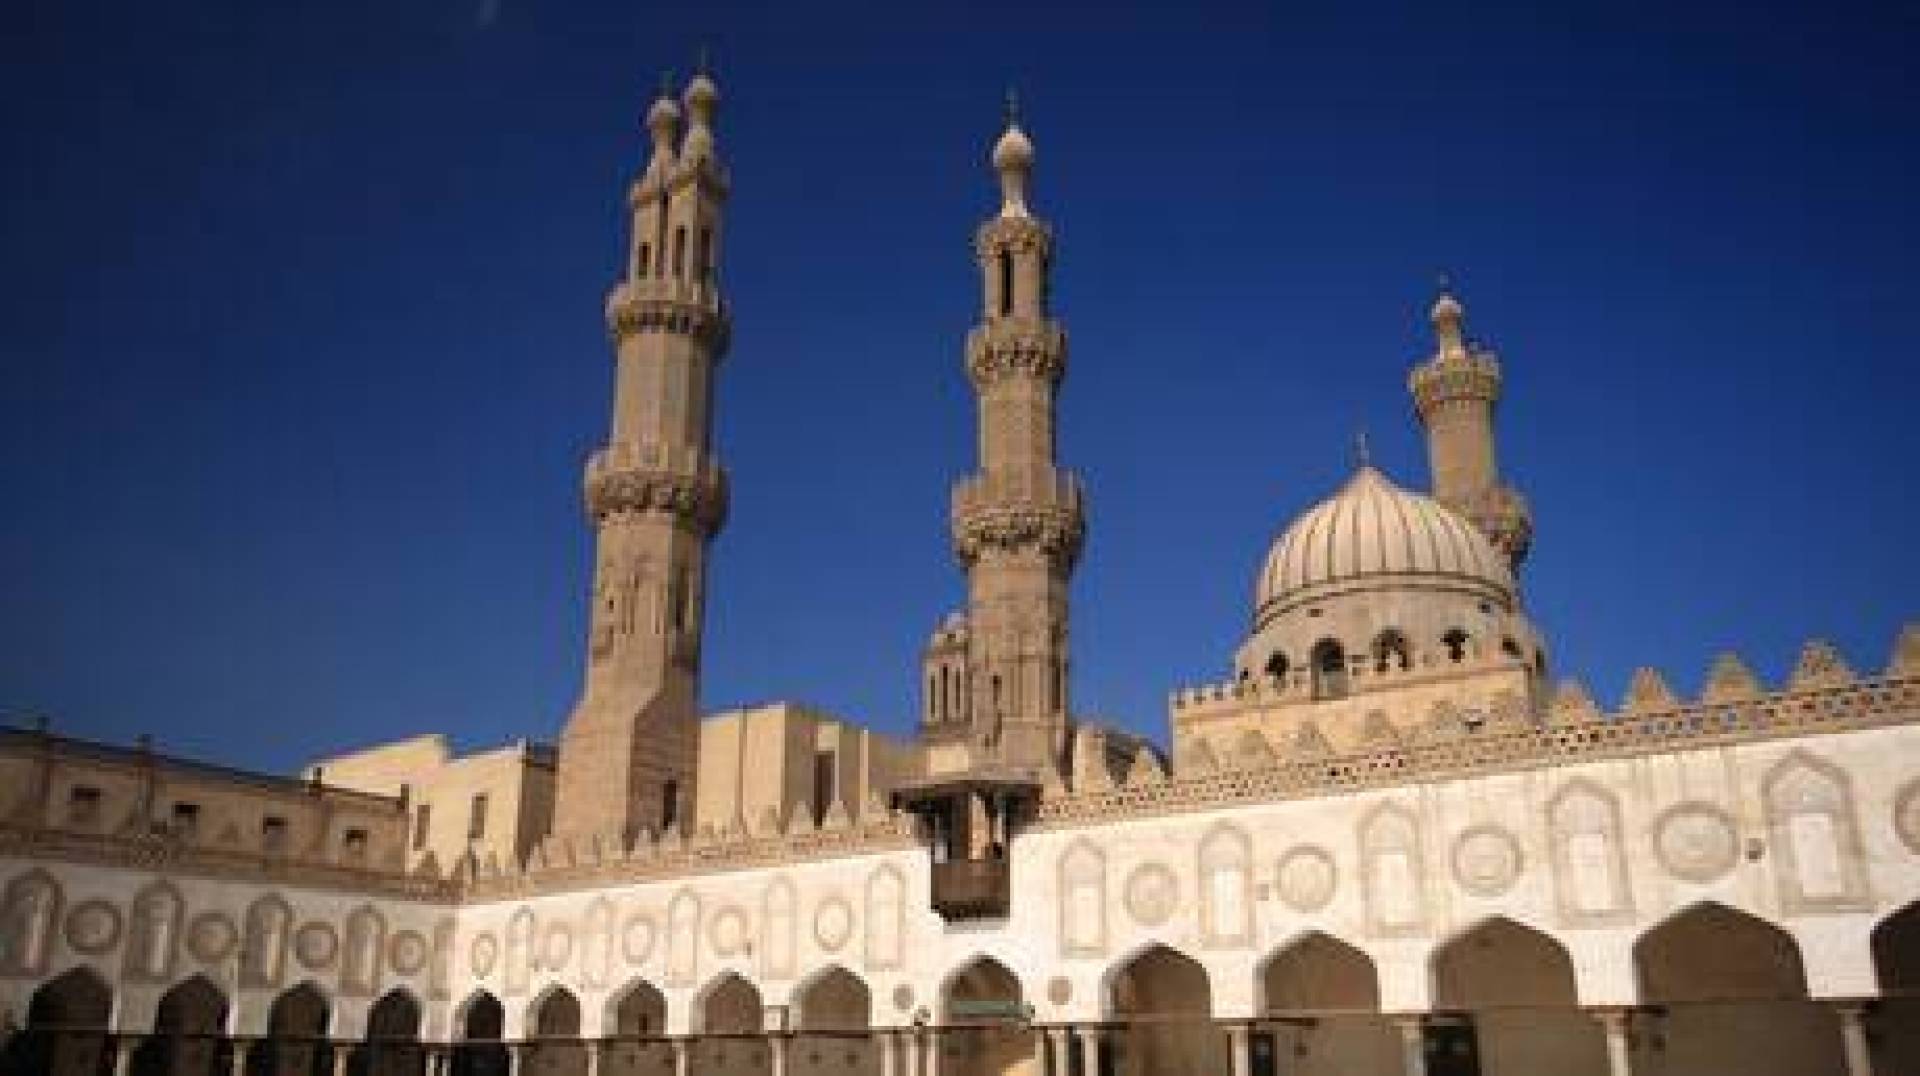 عالم أزهري: الصلاة بمساجد الأضرحة صحيحة وزيارة أماكن الصالحين مطلوبة